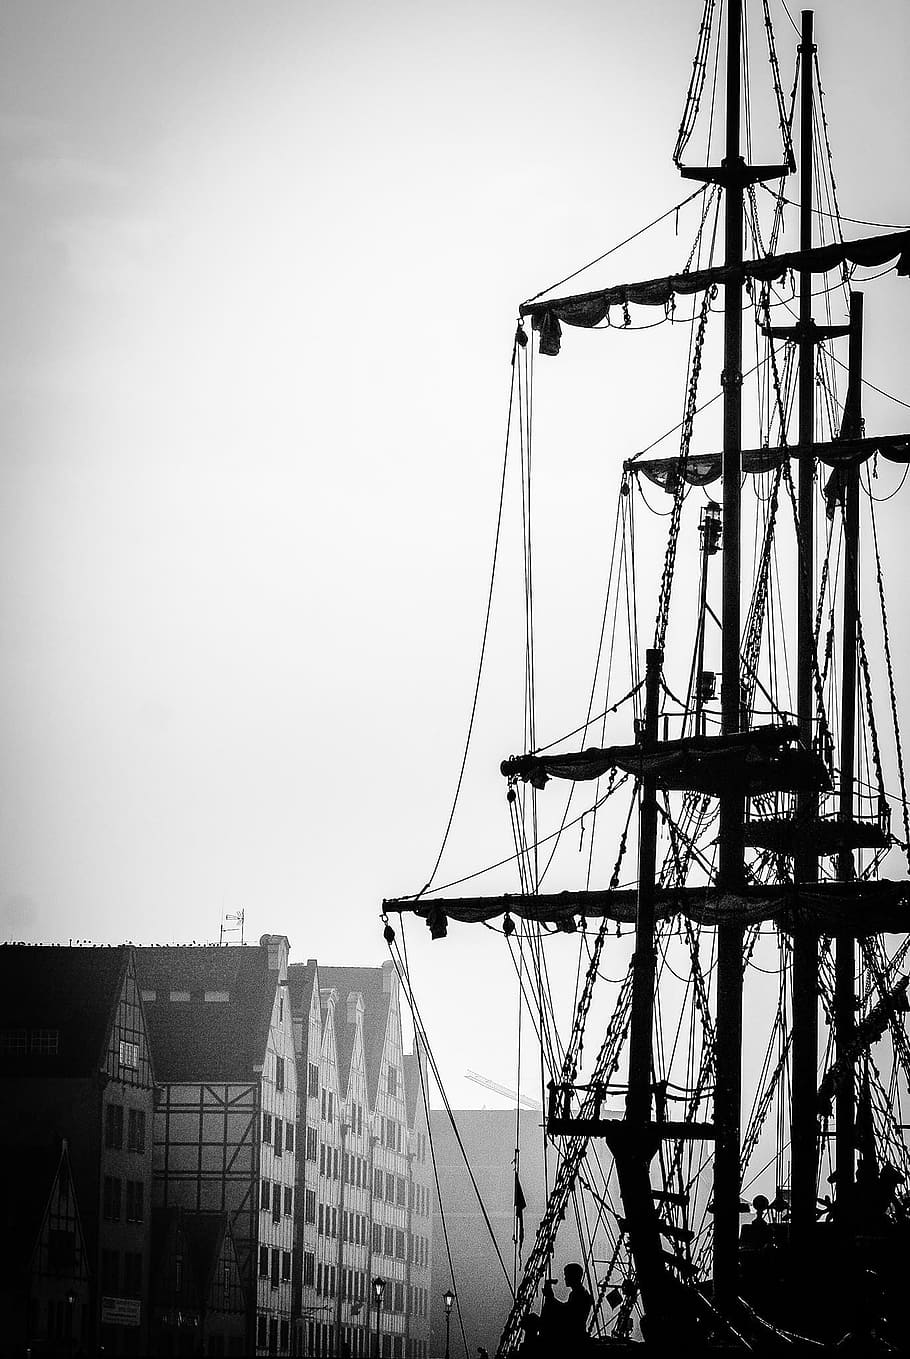 the mast, sailing ship, sea, sailboats, water, ship, port, the waterfront, haven, boat